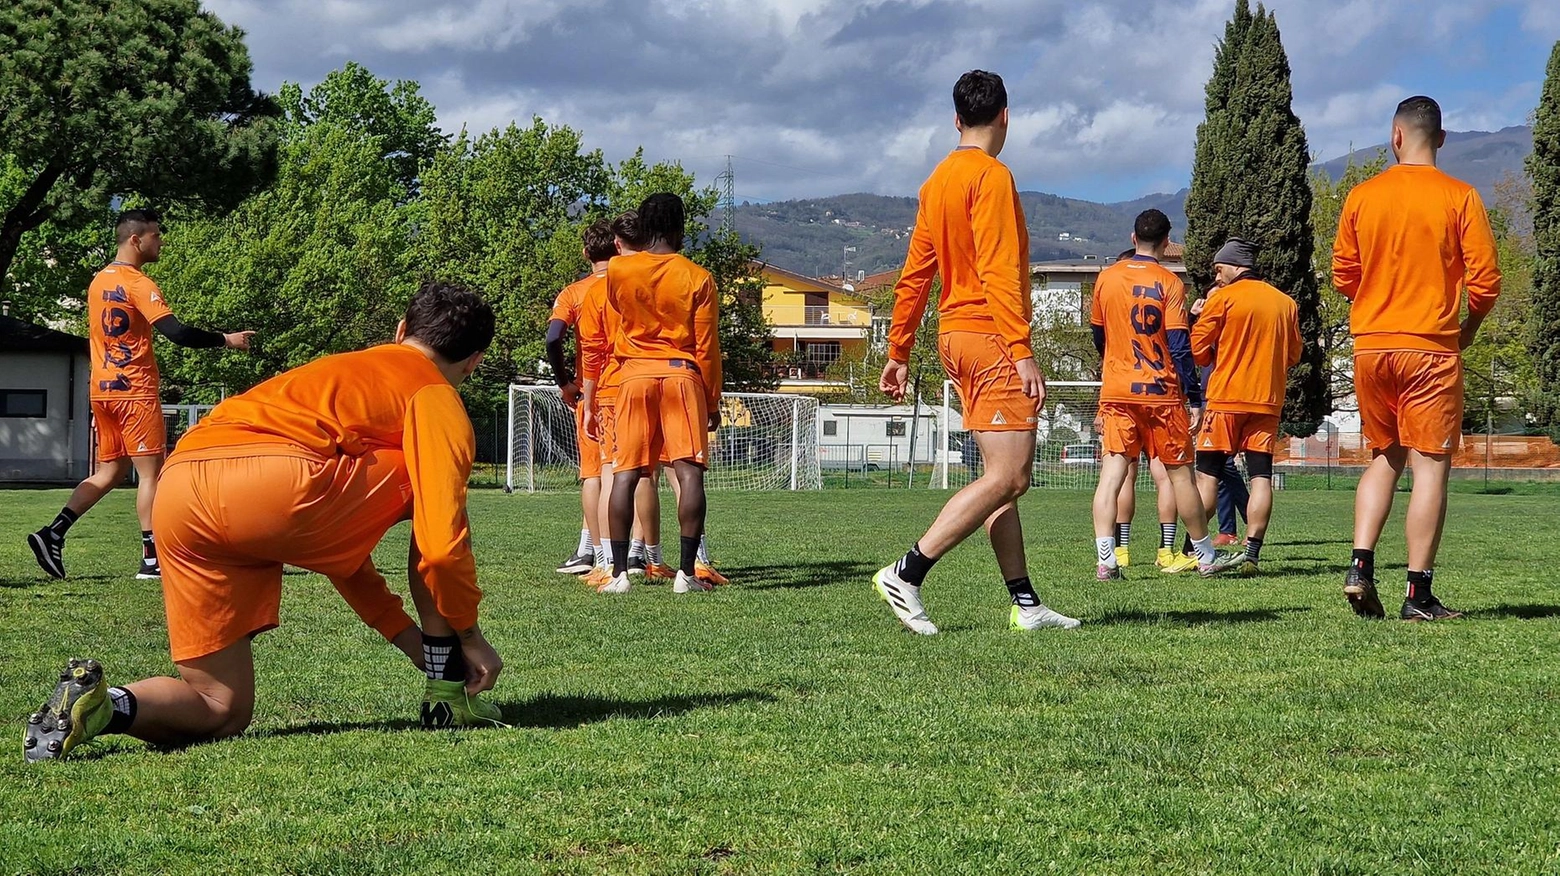 Se gli orange non si presentano alle 15 al Melani con il San Giuliano, è finita. La squadra pare orientata a disertare. Pure i tifosi non vogliono che si giochi.